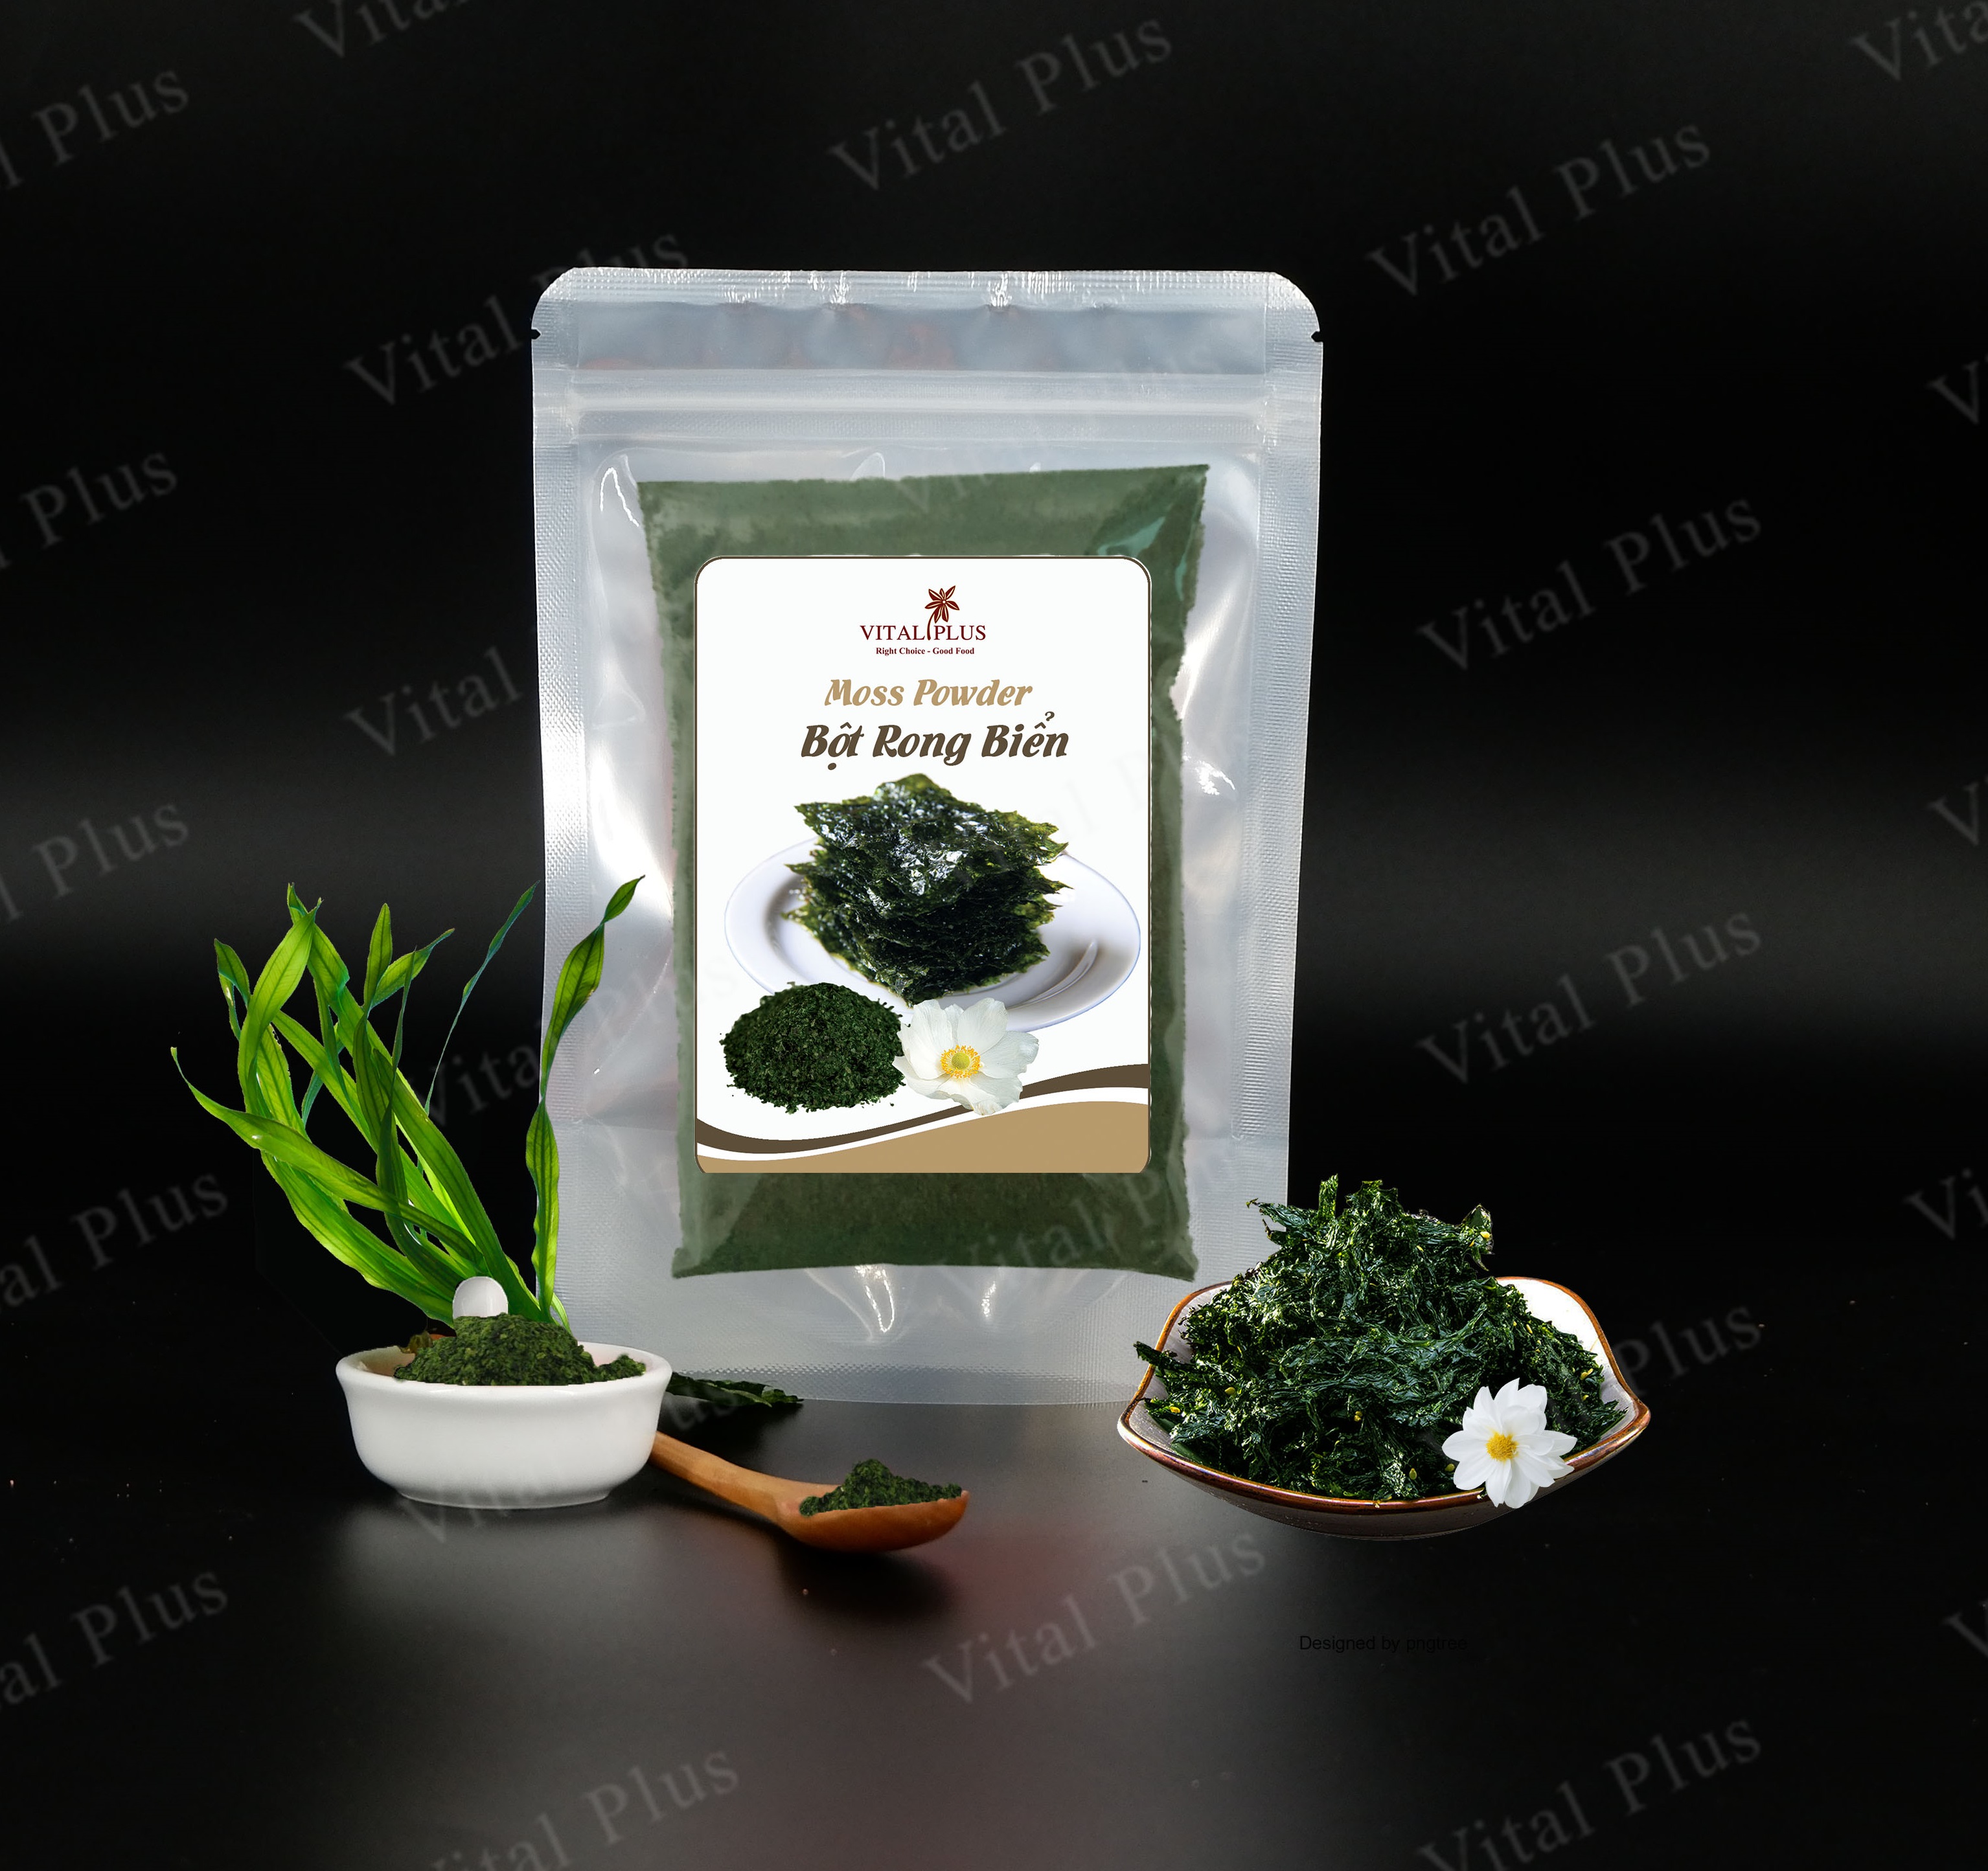 1 KG Bột Rong Biển - Moss Powder - Shop Nhà Anise - Vital Plus